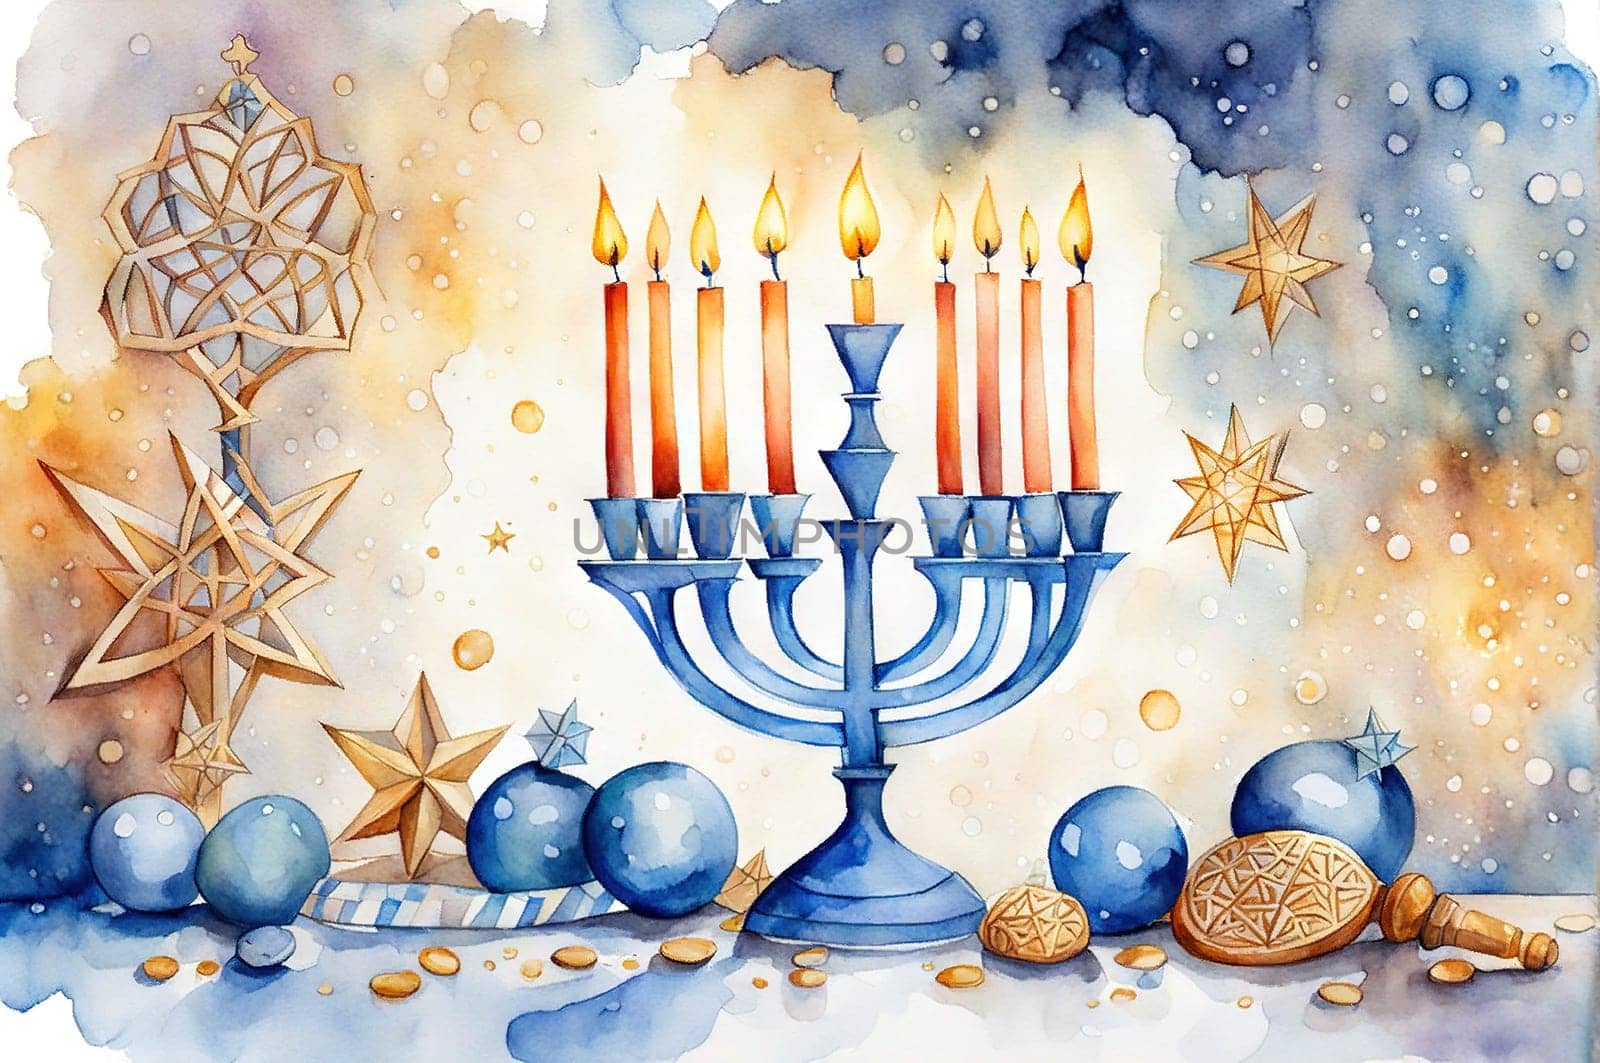 Watercolor drawing Happy Hanukkah. Jewish holiday Hanukkah, greeting card with traditional candles symbols of Hanukkah.